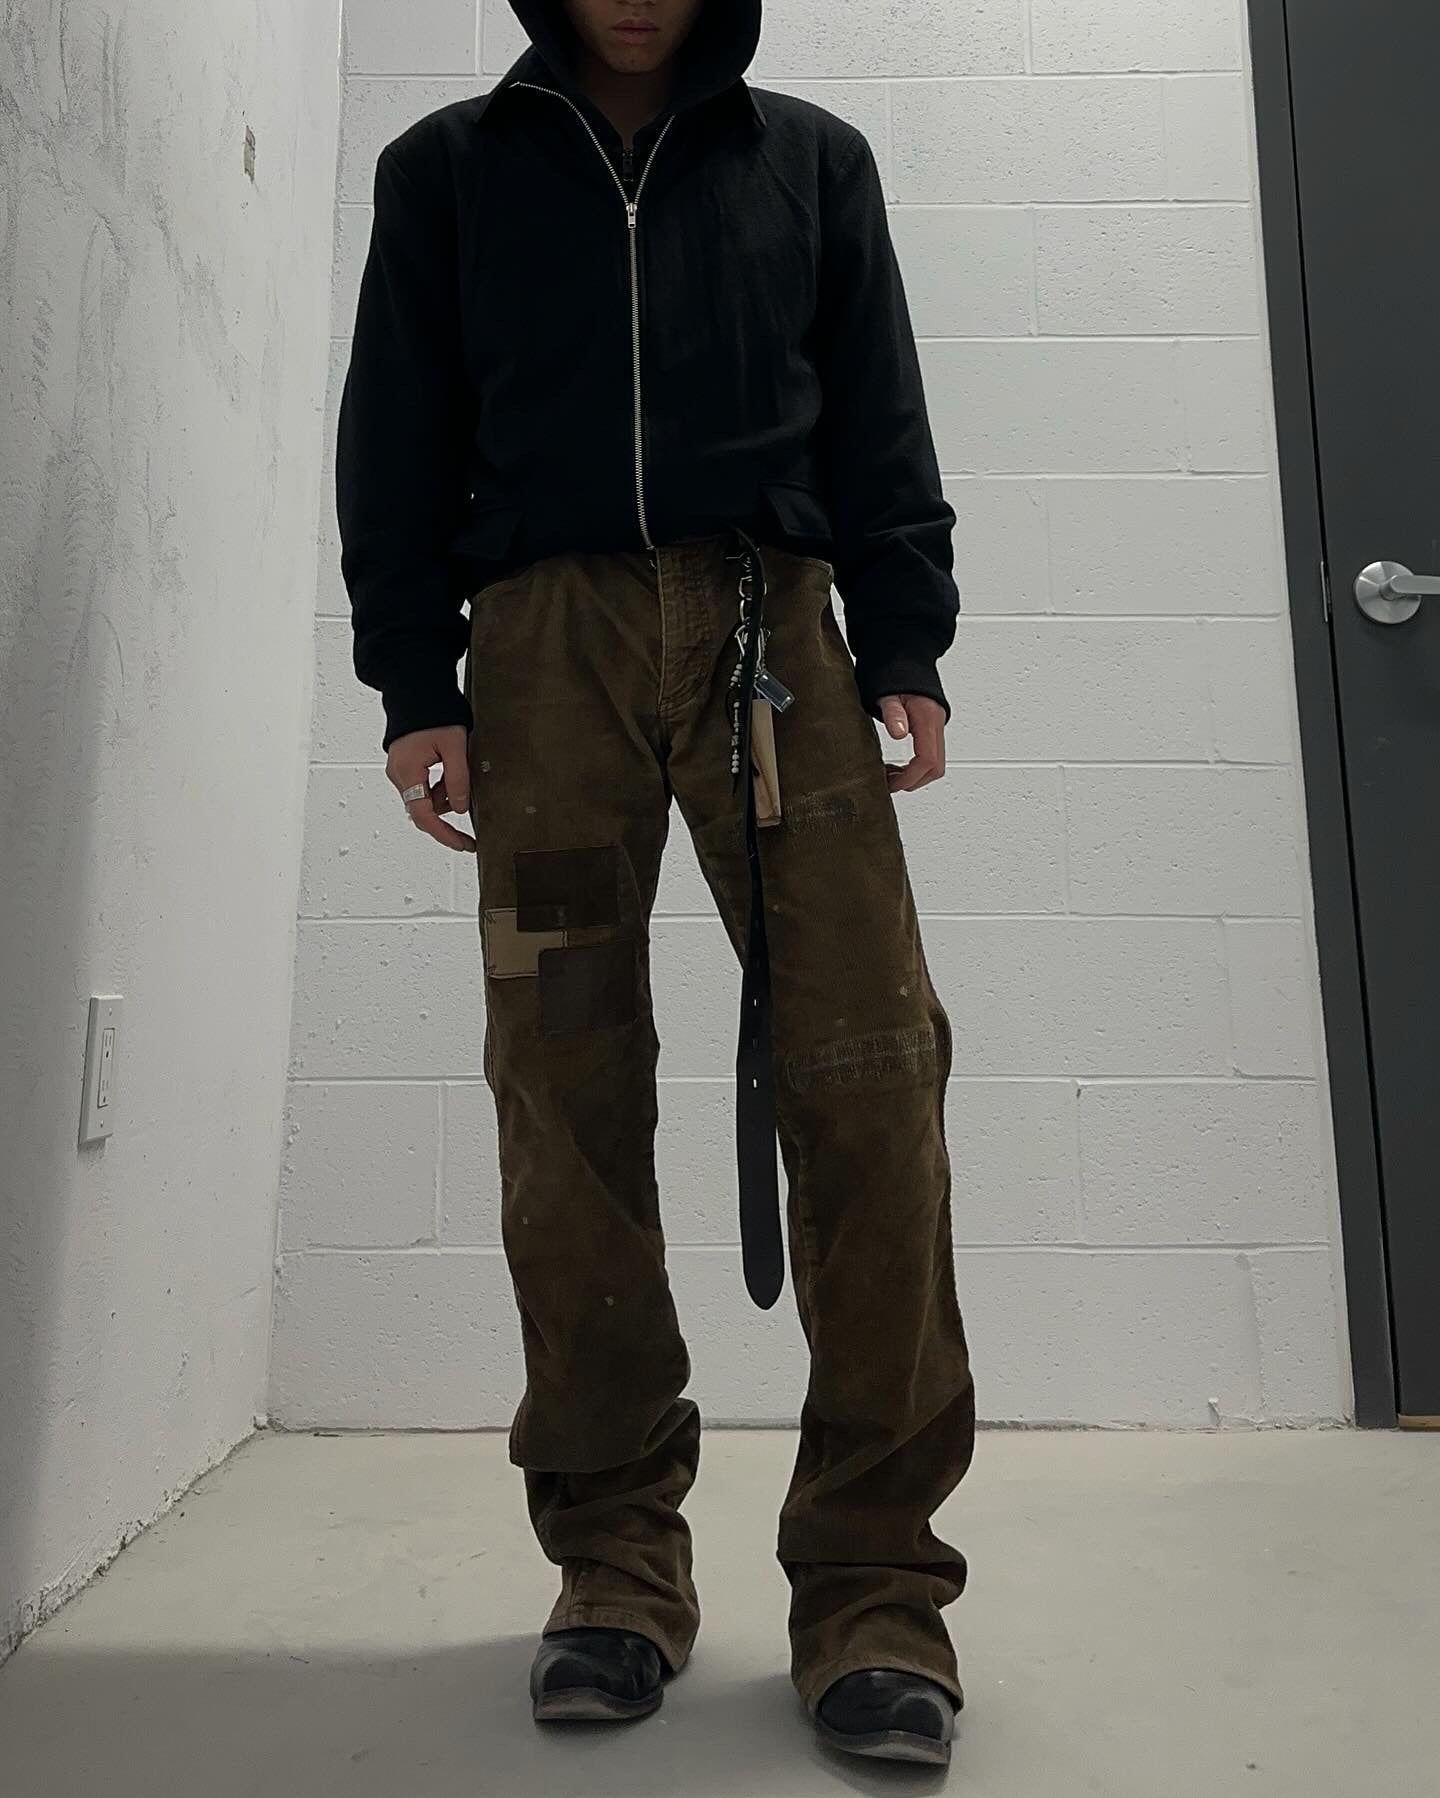 Isamu Katayama “BACKLASH” AW12 Garment-Dyed Leather Patches Bootcut Corduroy Pants